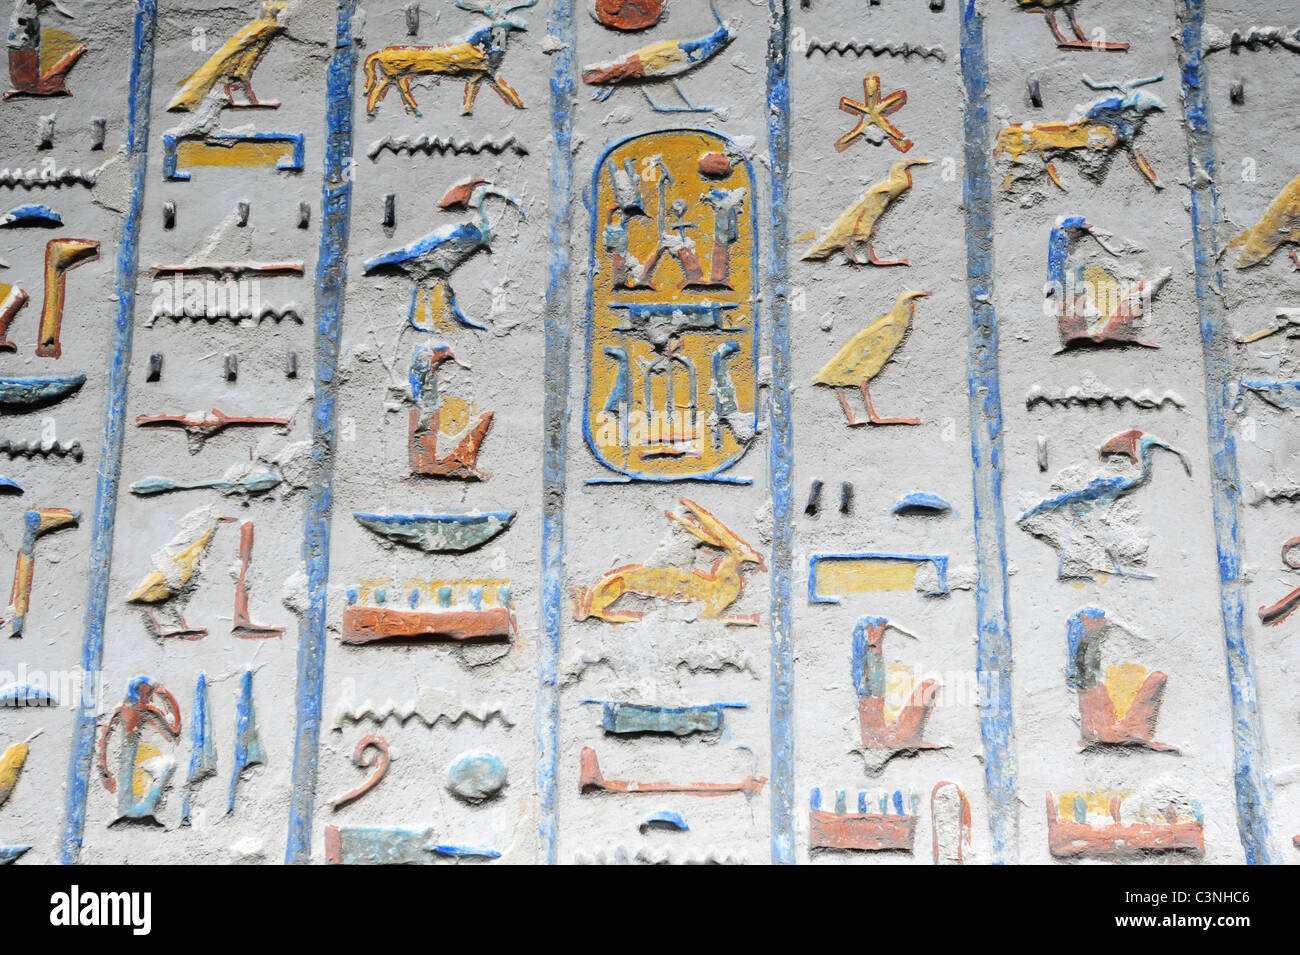 África y Oriente Próximo Egipto tumba egipcia de Ramsés IV Valle de los Reyes jeroglíficos pintados y tallados en las paredes. Foto de stock